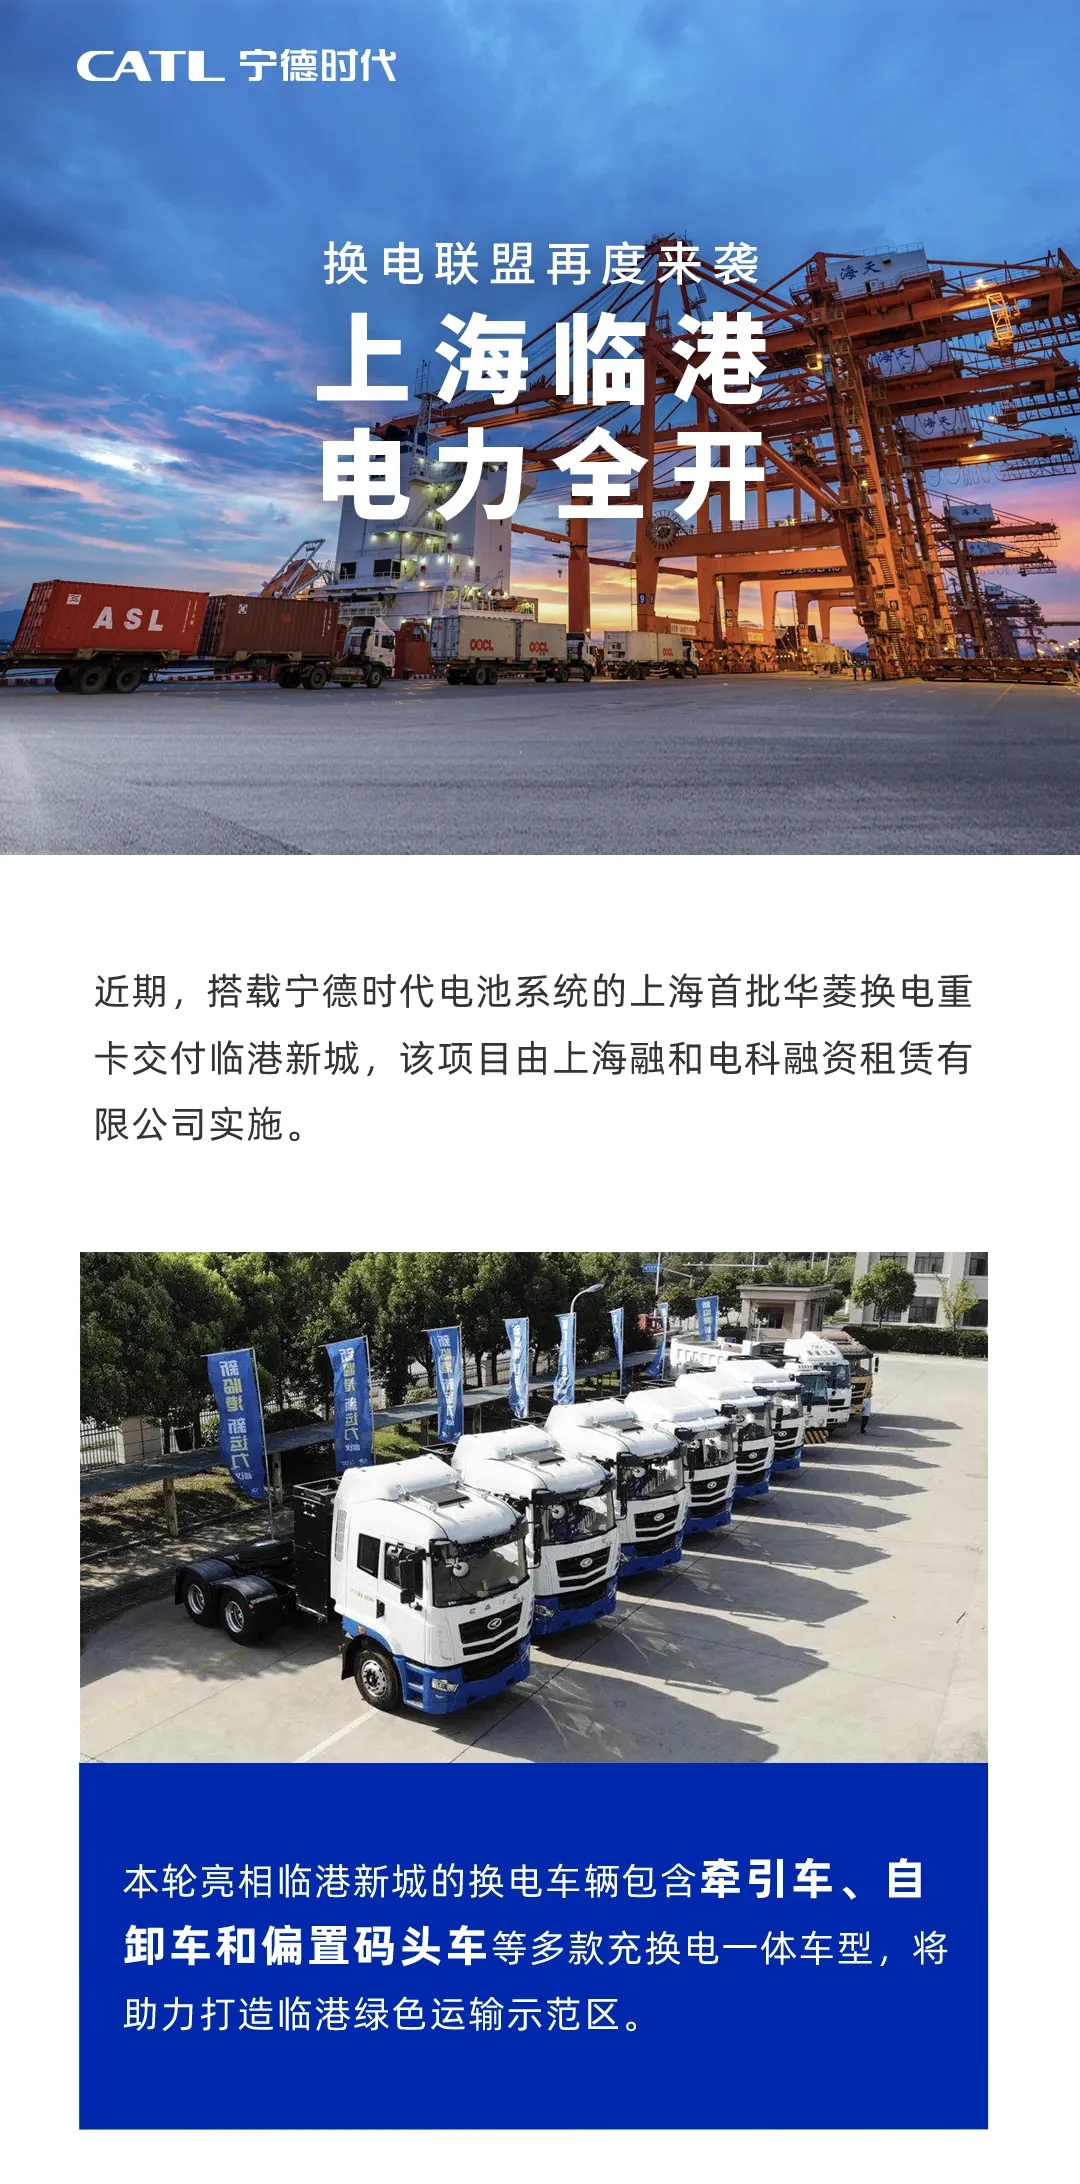 近期，搭载宁德时代电池系统的上海首批华菱换电重卡交付临港新城，该项目由上海融合电科融资租赁有限公司实施。